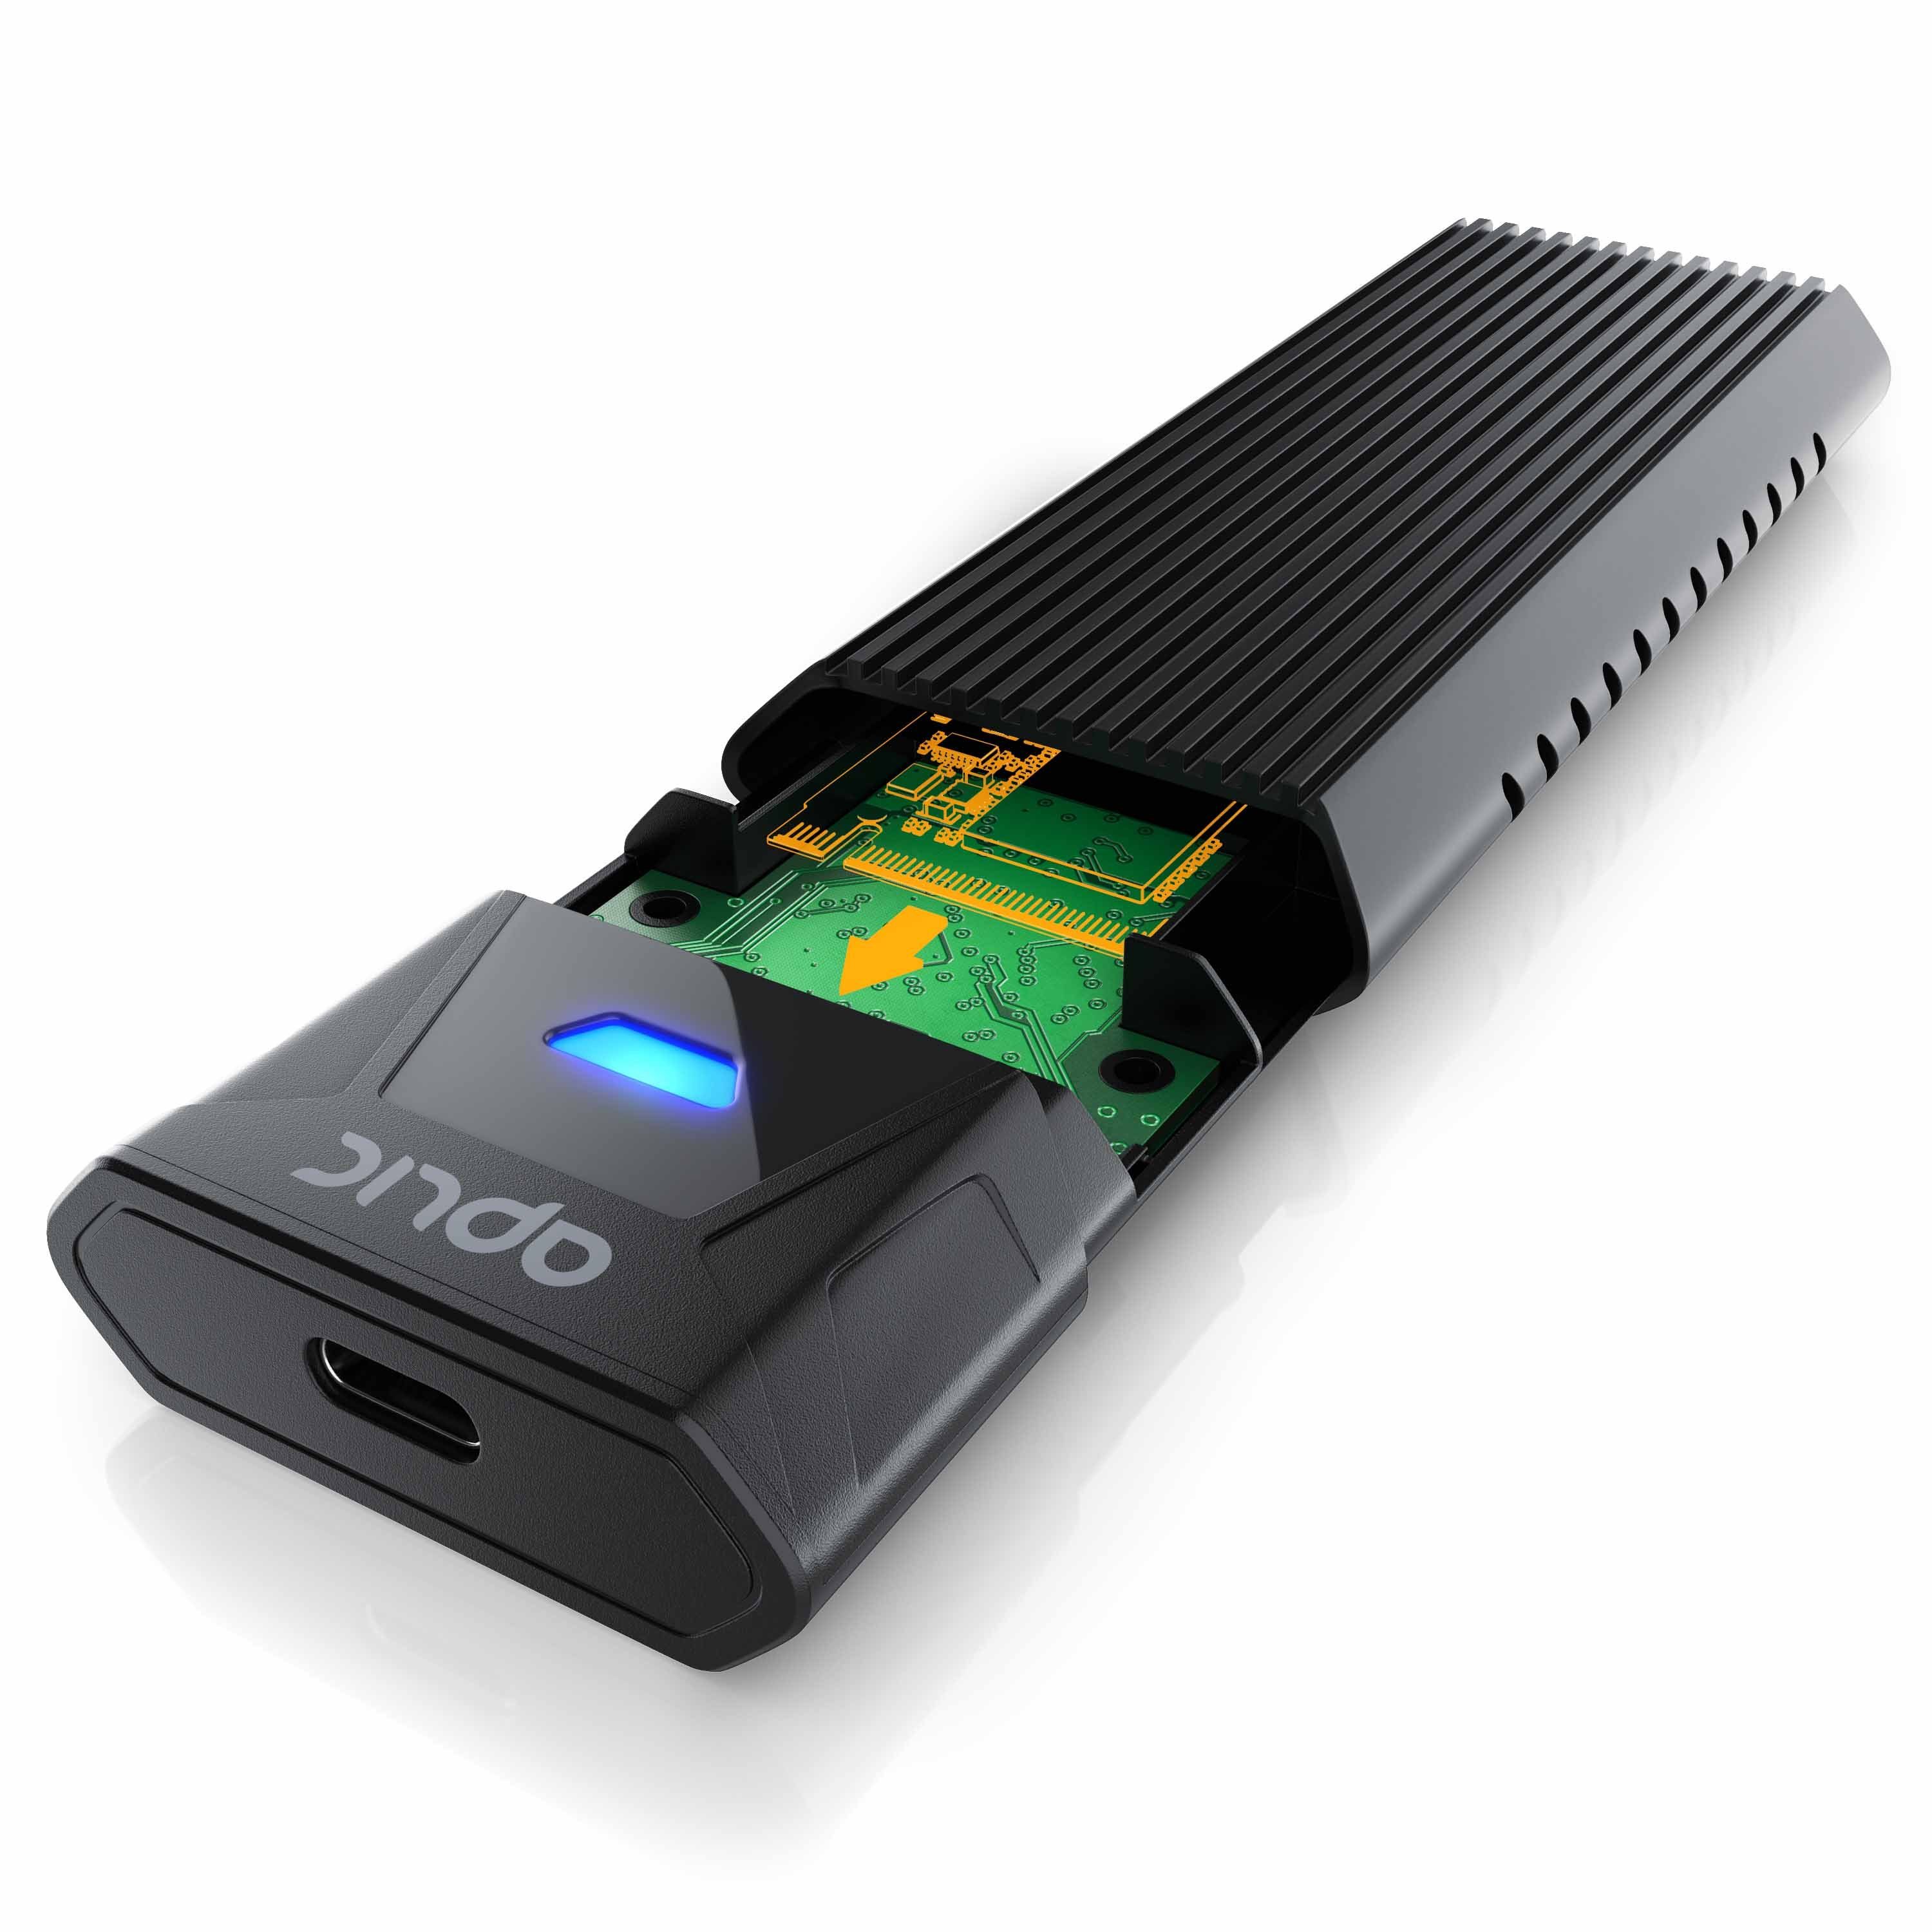 und Festplatten-Gehäuse, kompatibel USB SATA PCIe M.2 Aplic Gehäuse 3.0 3.2 2, NVMe Gen